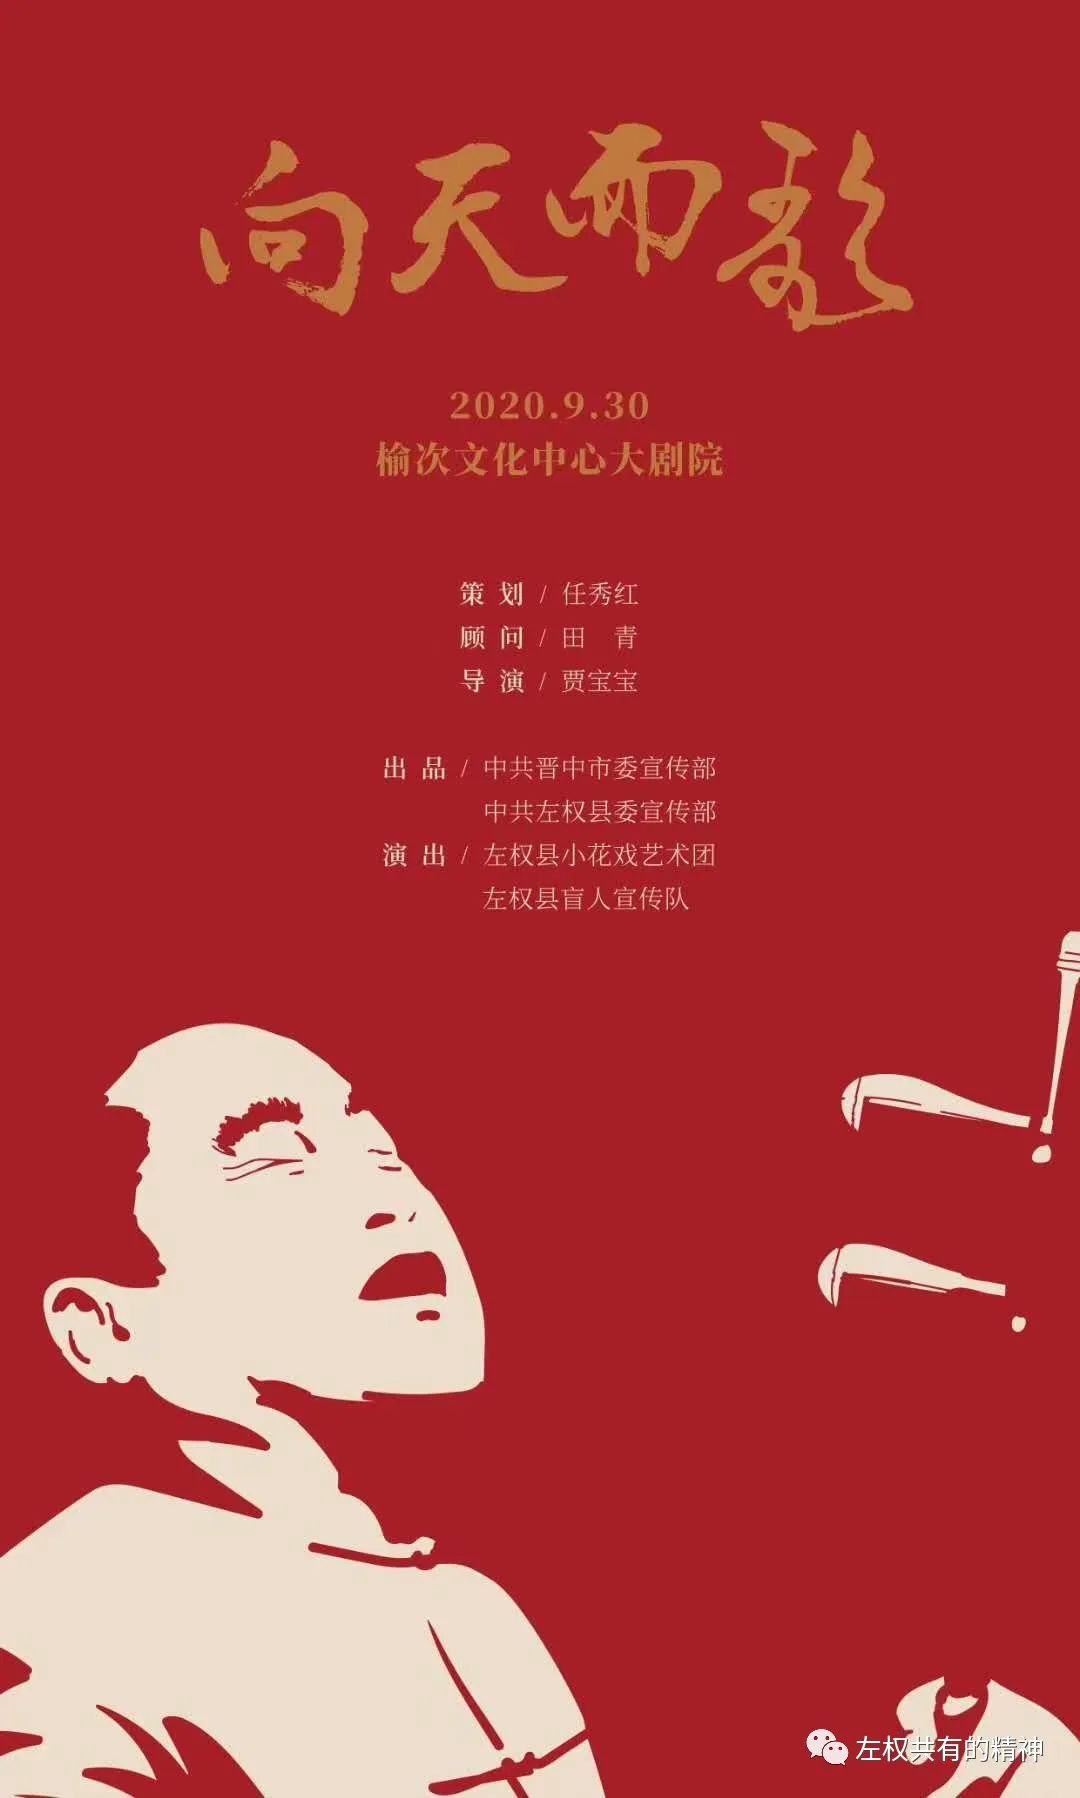 《向天而歌》导演贾宝宝发布首款剧目海报